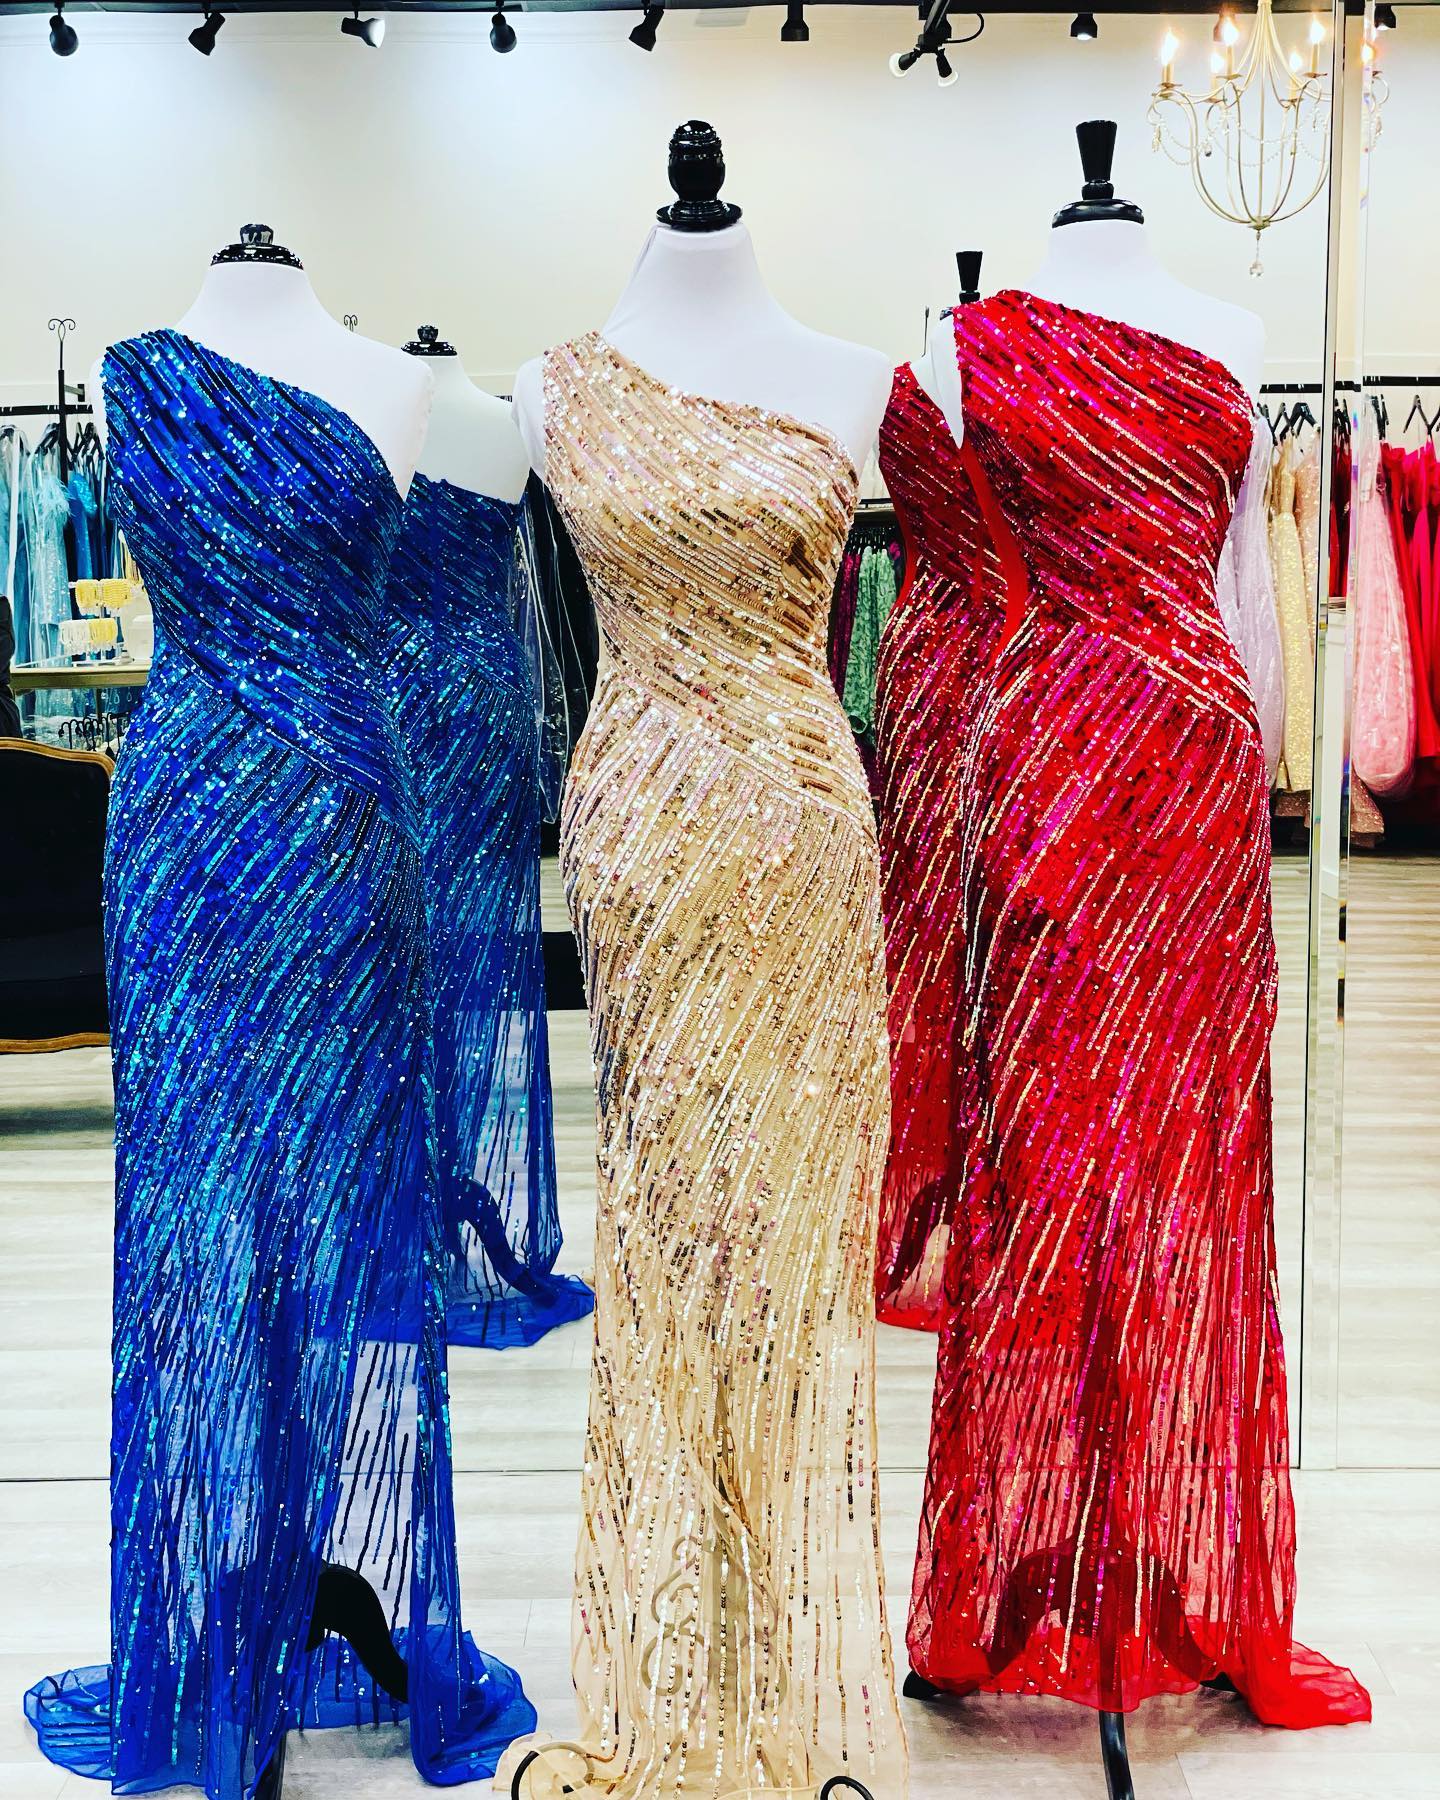 Cekinowa sukienka na studniówkę 2023 Orskurt dopasowany na jednym ramię zima formalne wieczór przyjęcia weselny Strit Slit Pageant Gala Runway Red-Carpet Blue Gold Red Green Gold Design